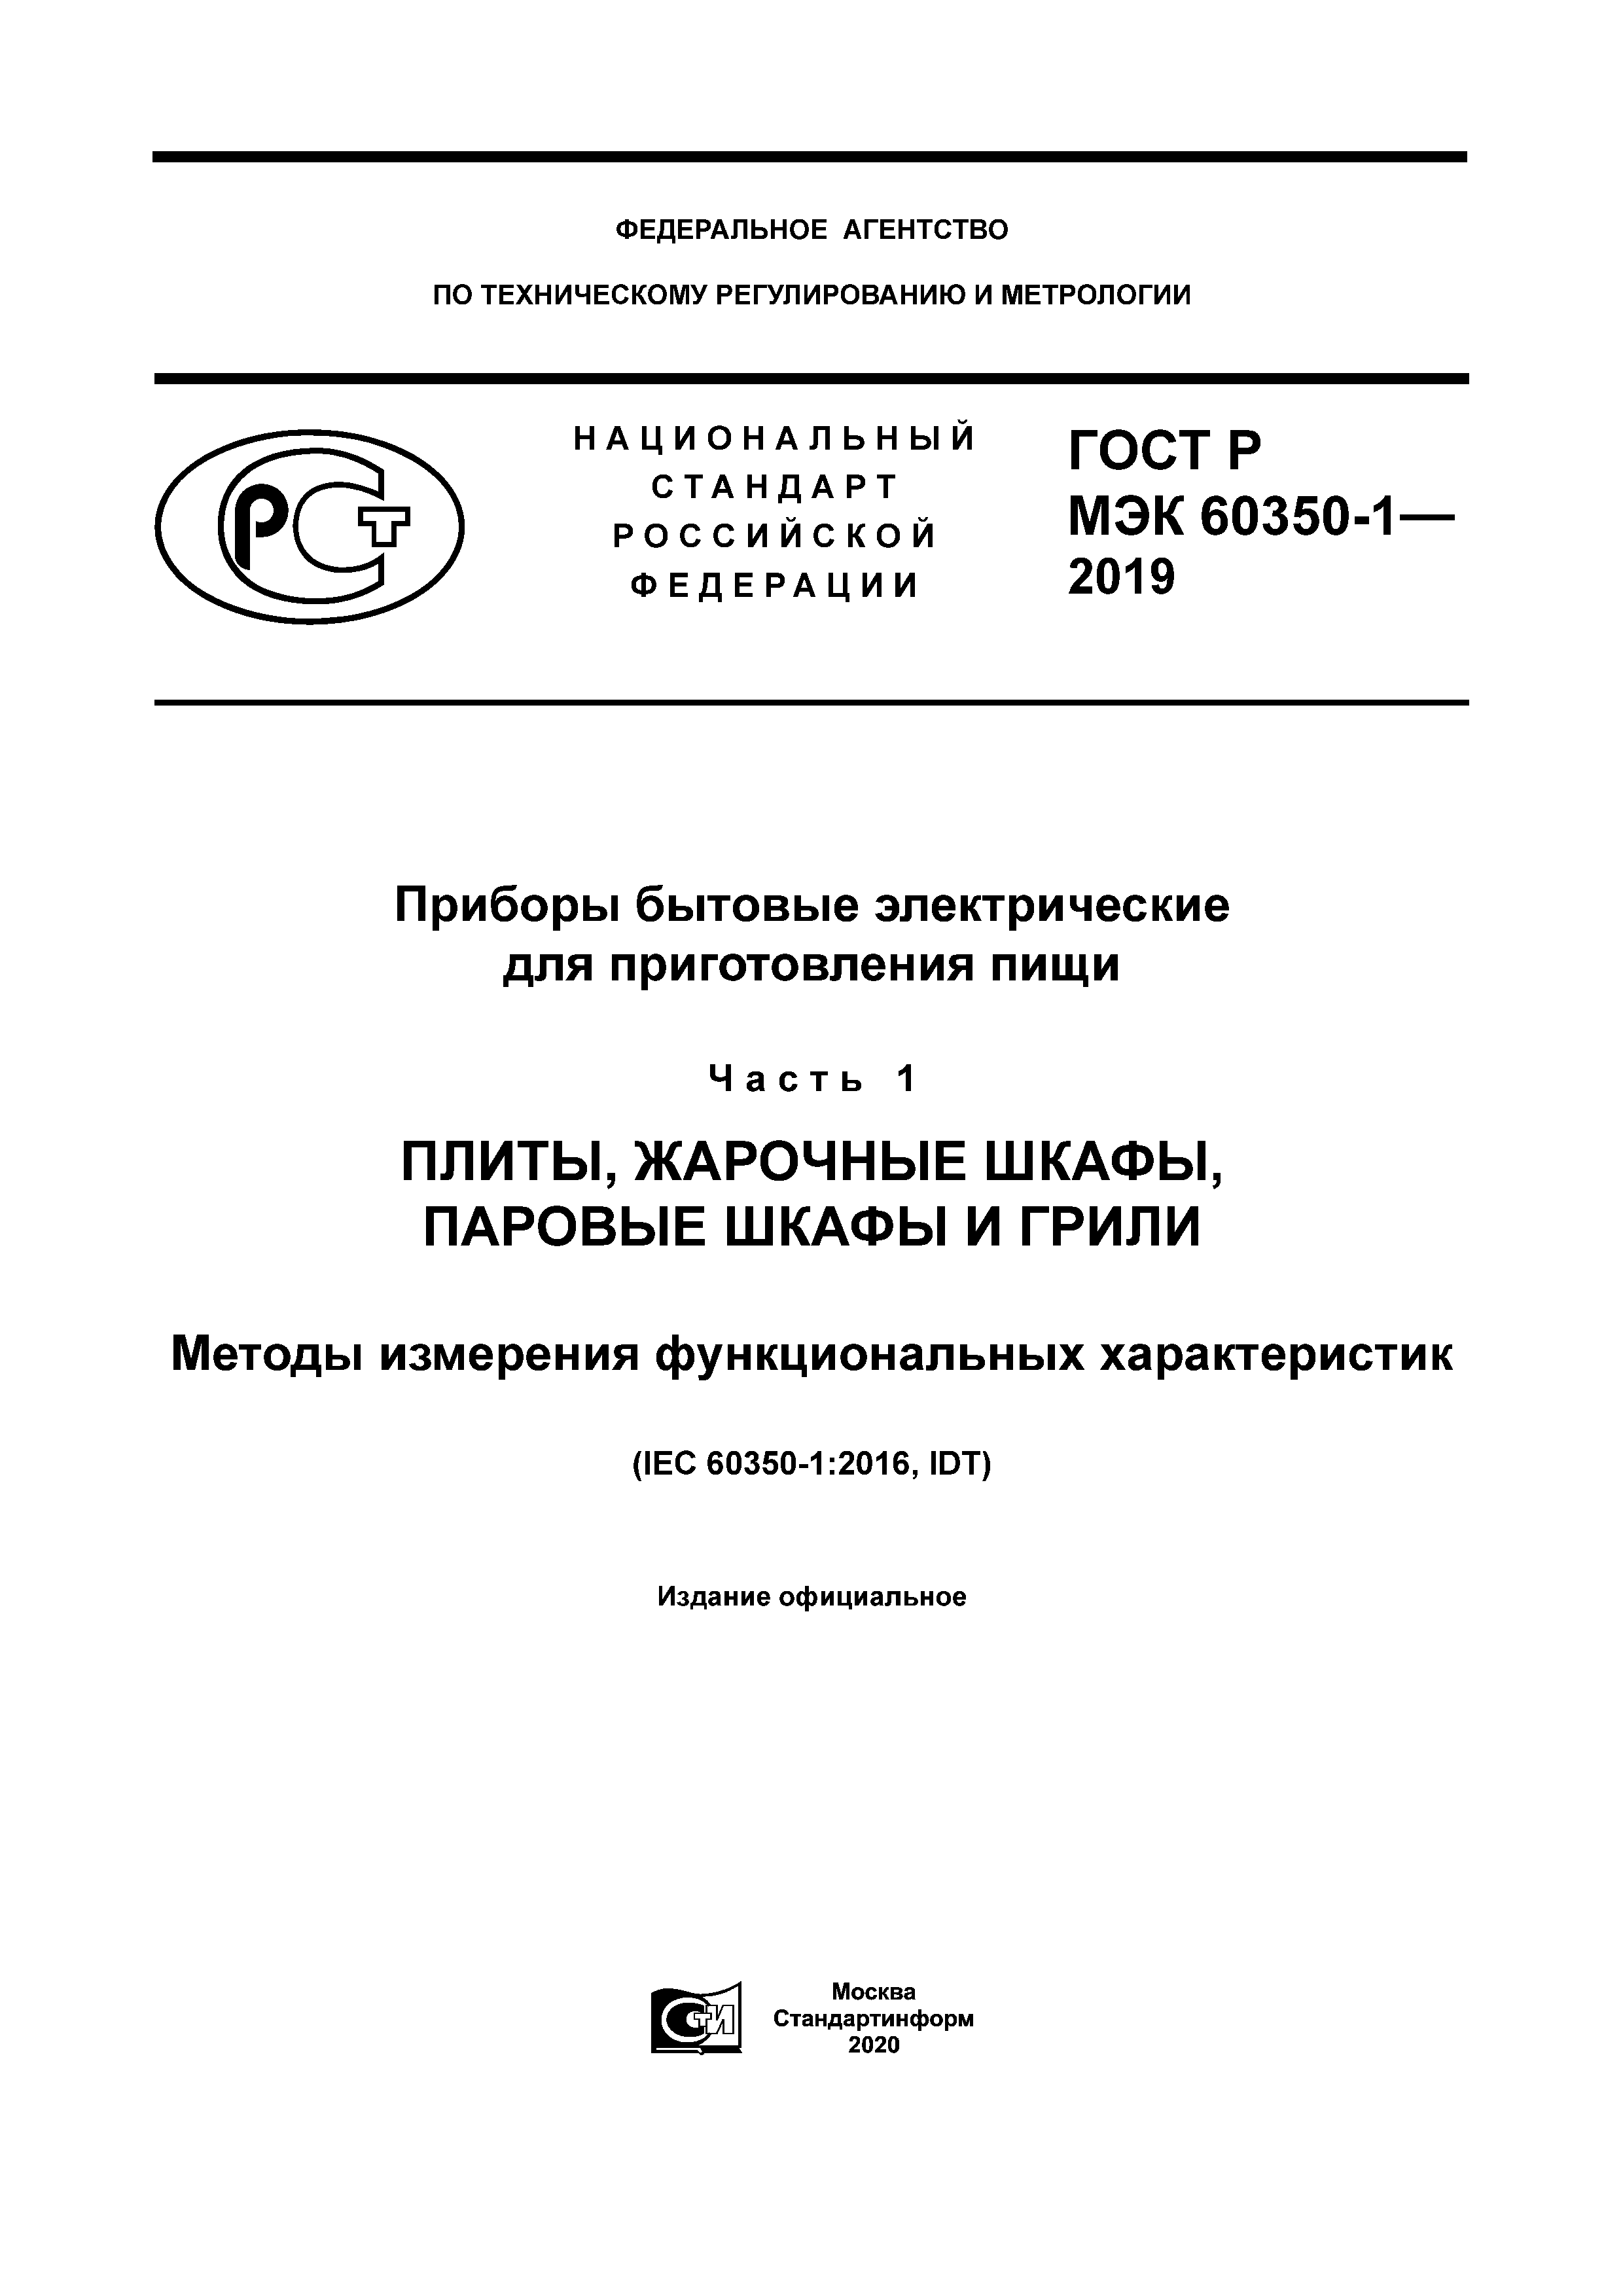 ГОСТ Р МЭК 60350-1-2019